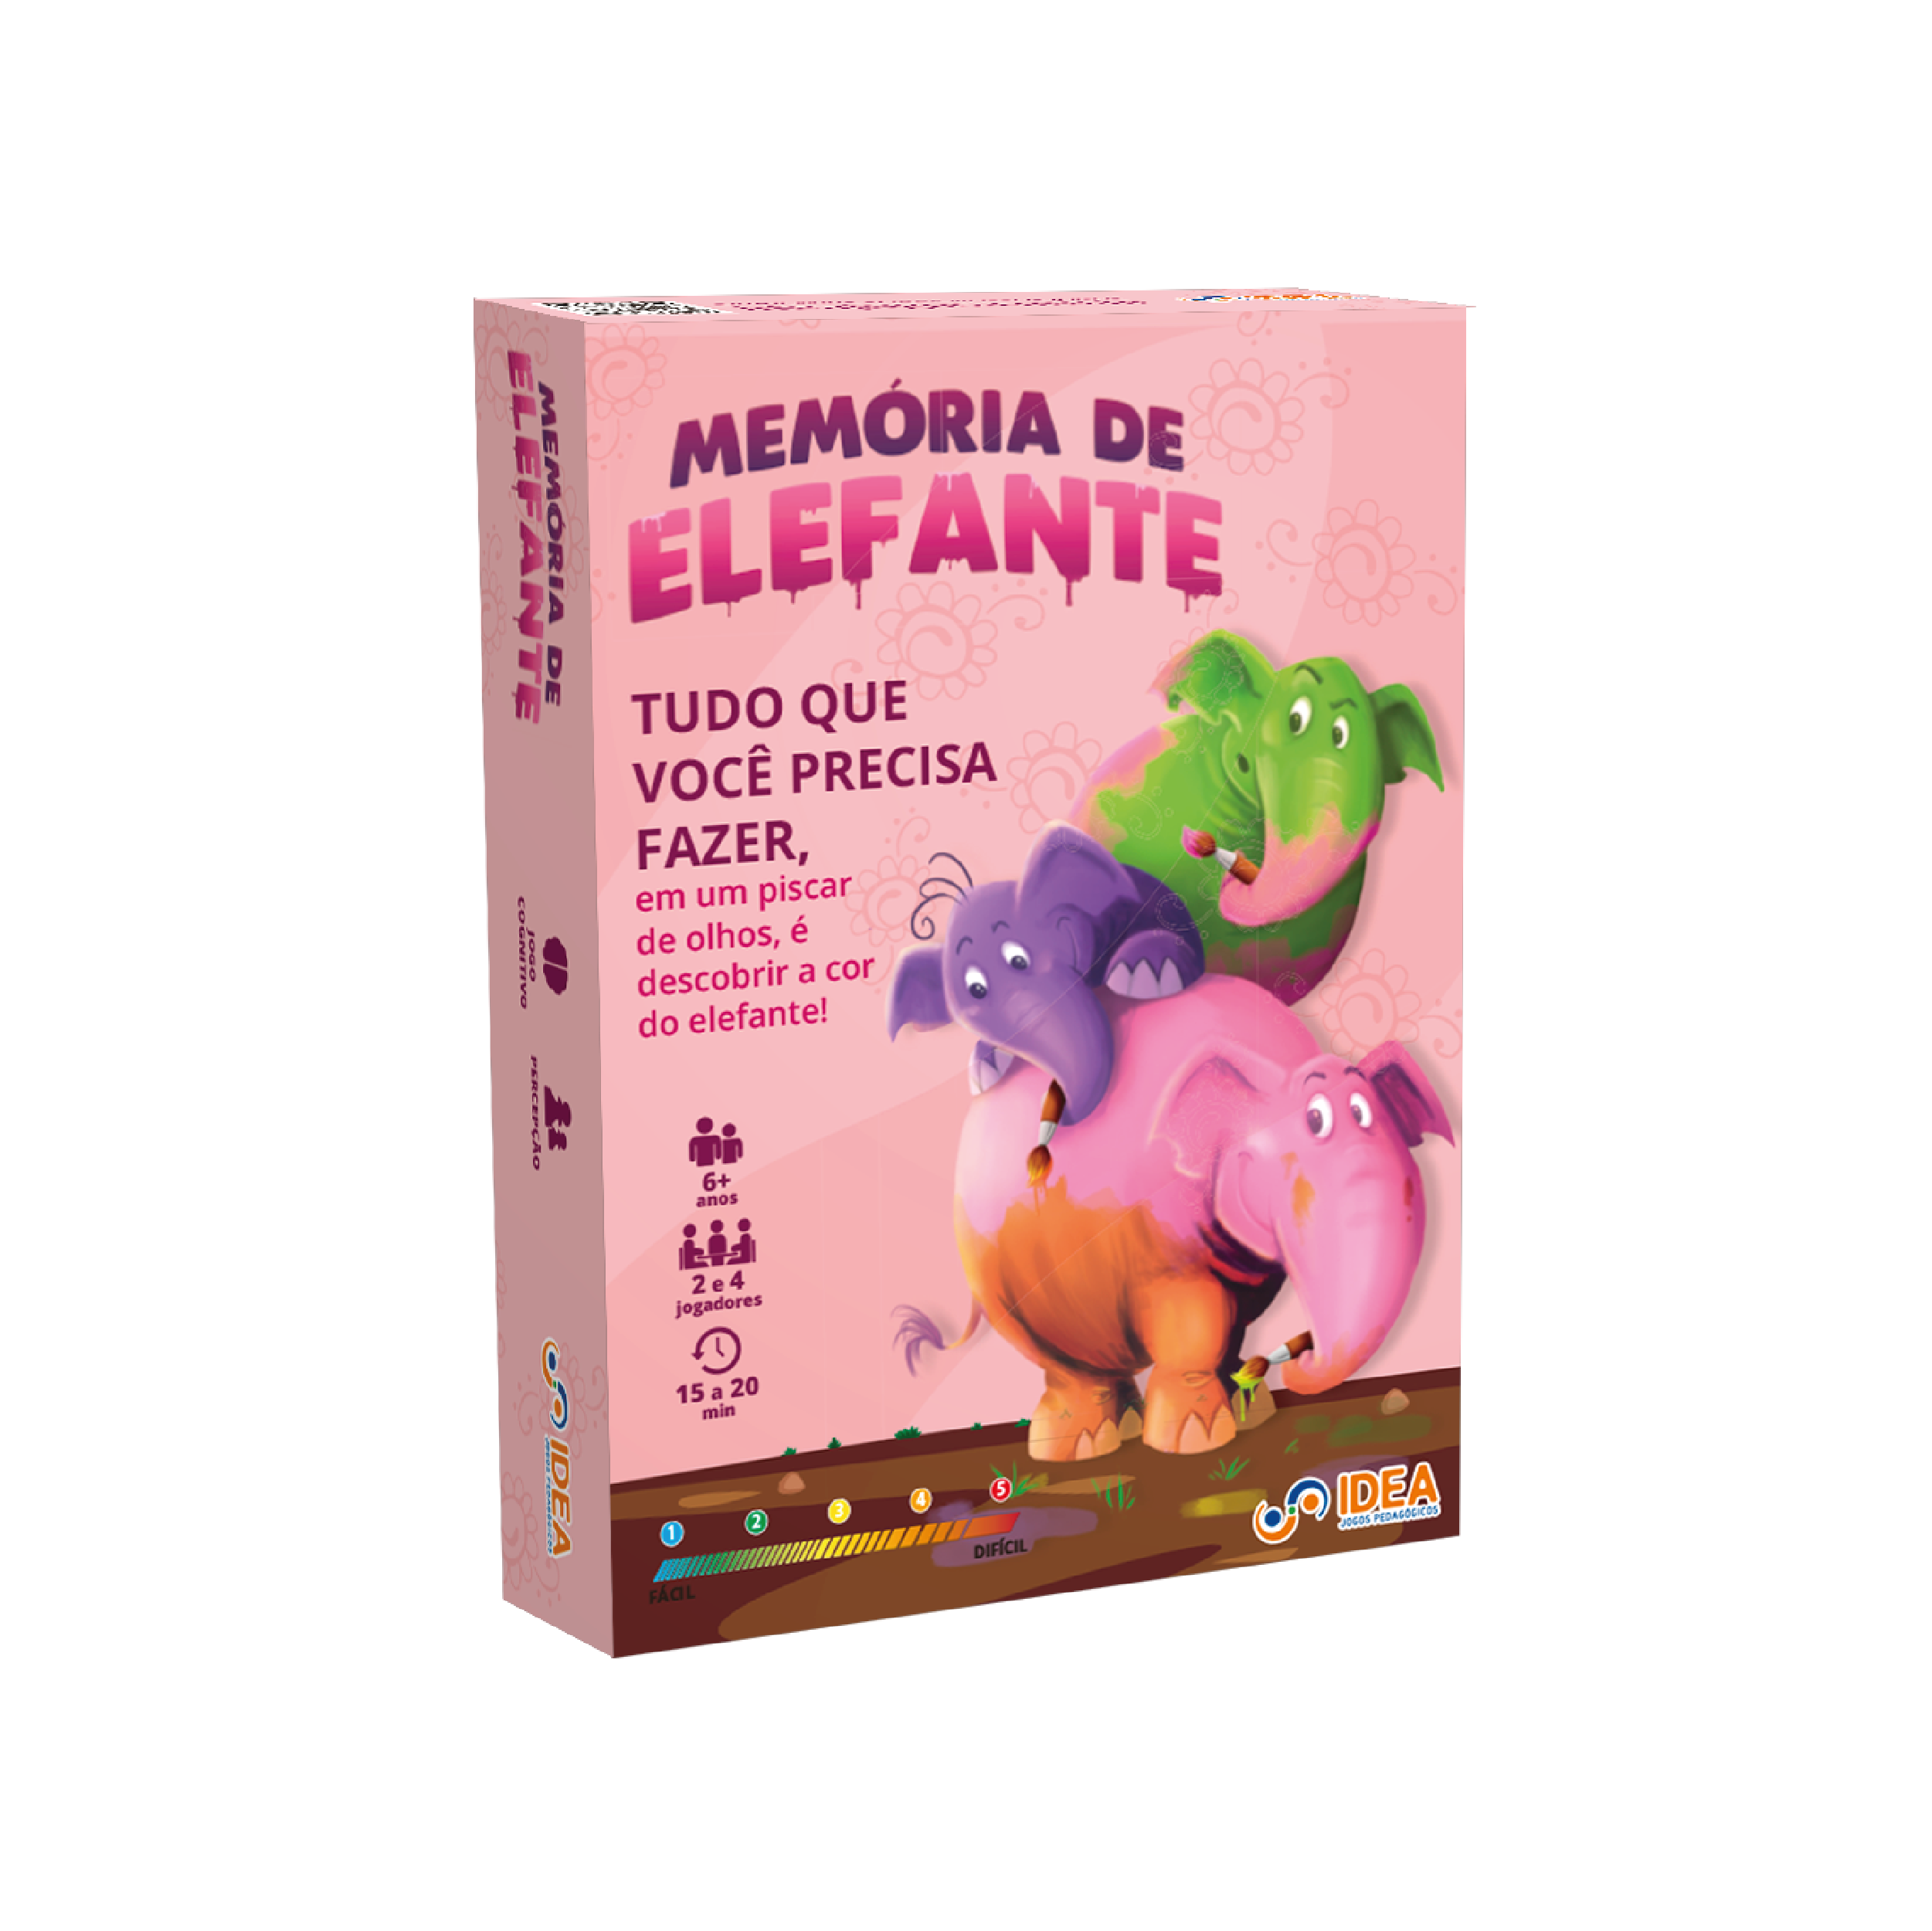 MEMÓRIA DE ELEFANTE